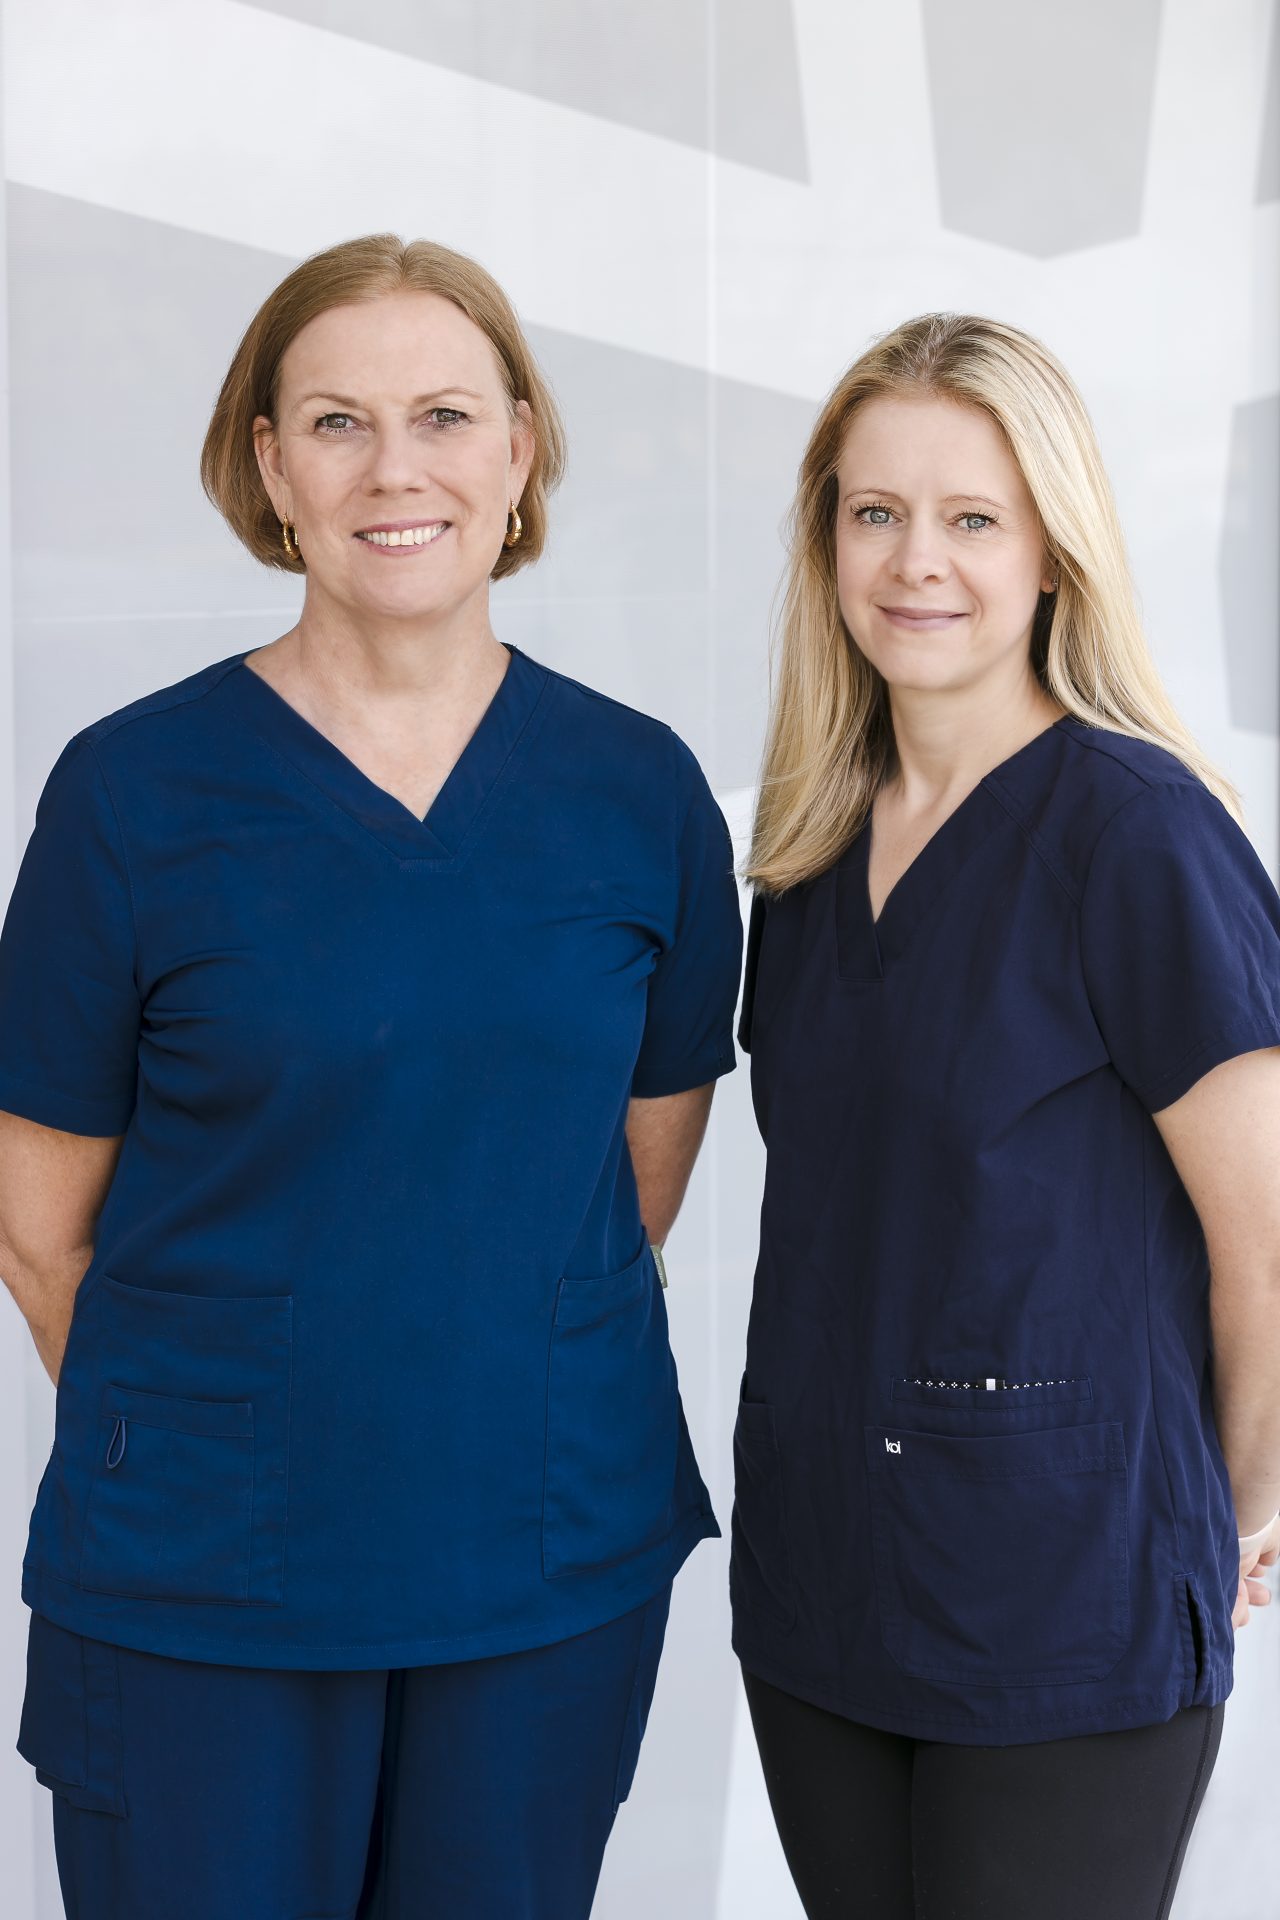 Nurses<br>
Robyn & Jane